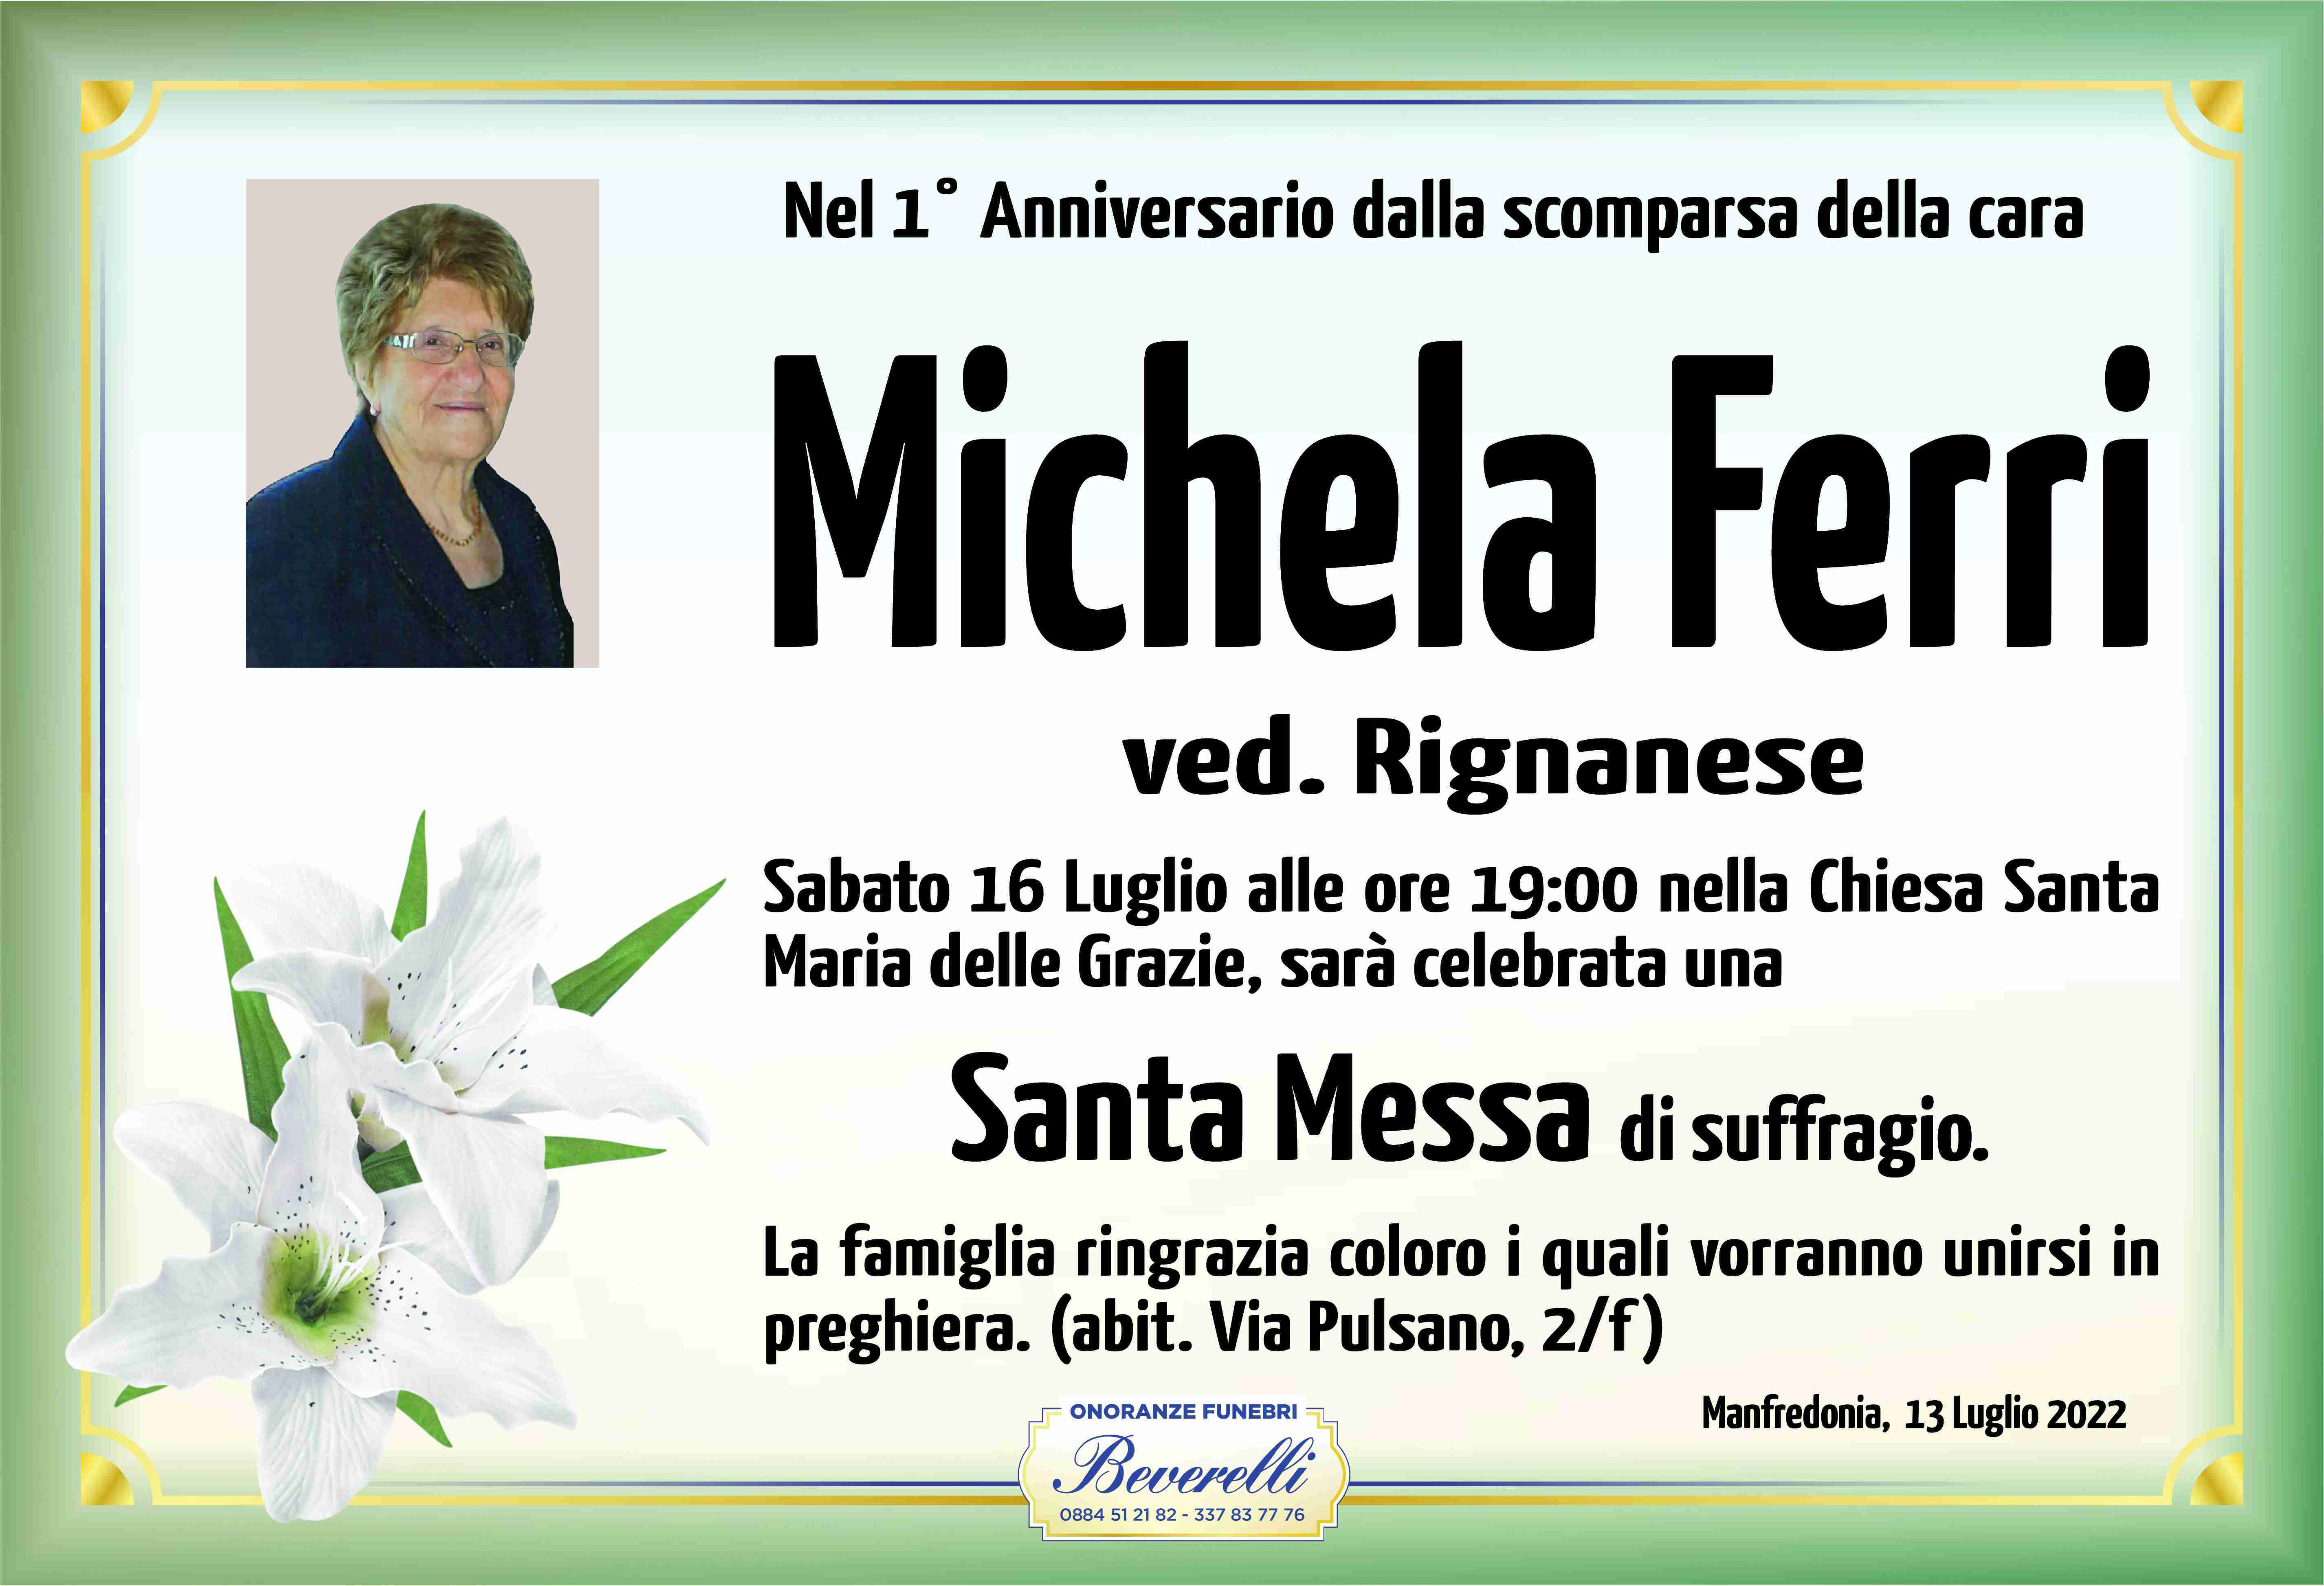 Michela Ferri